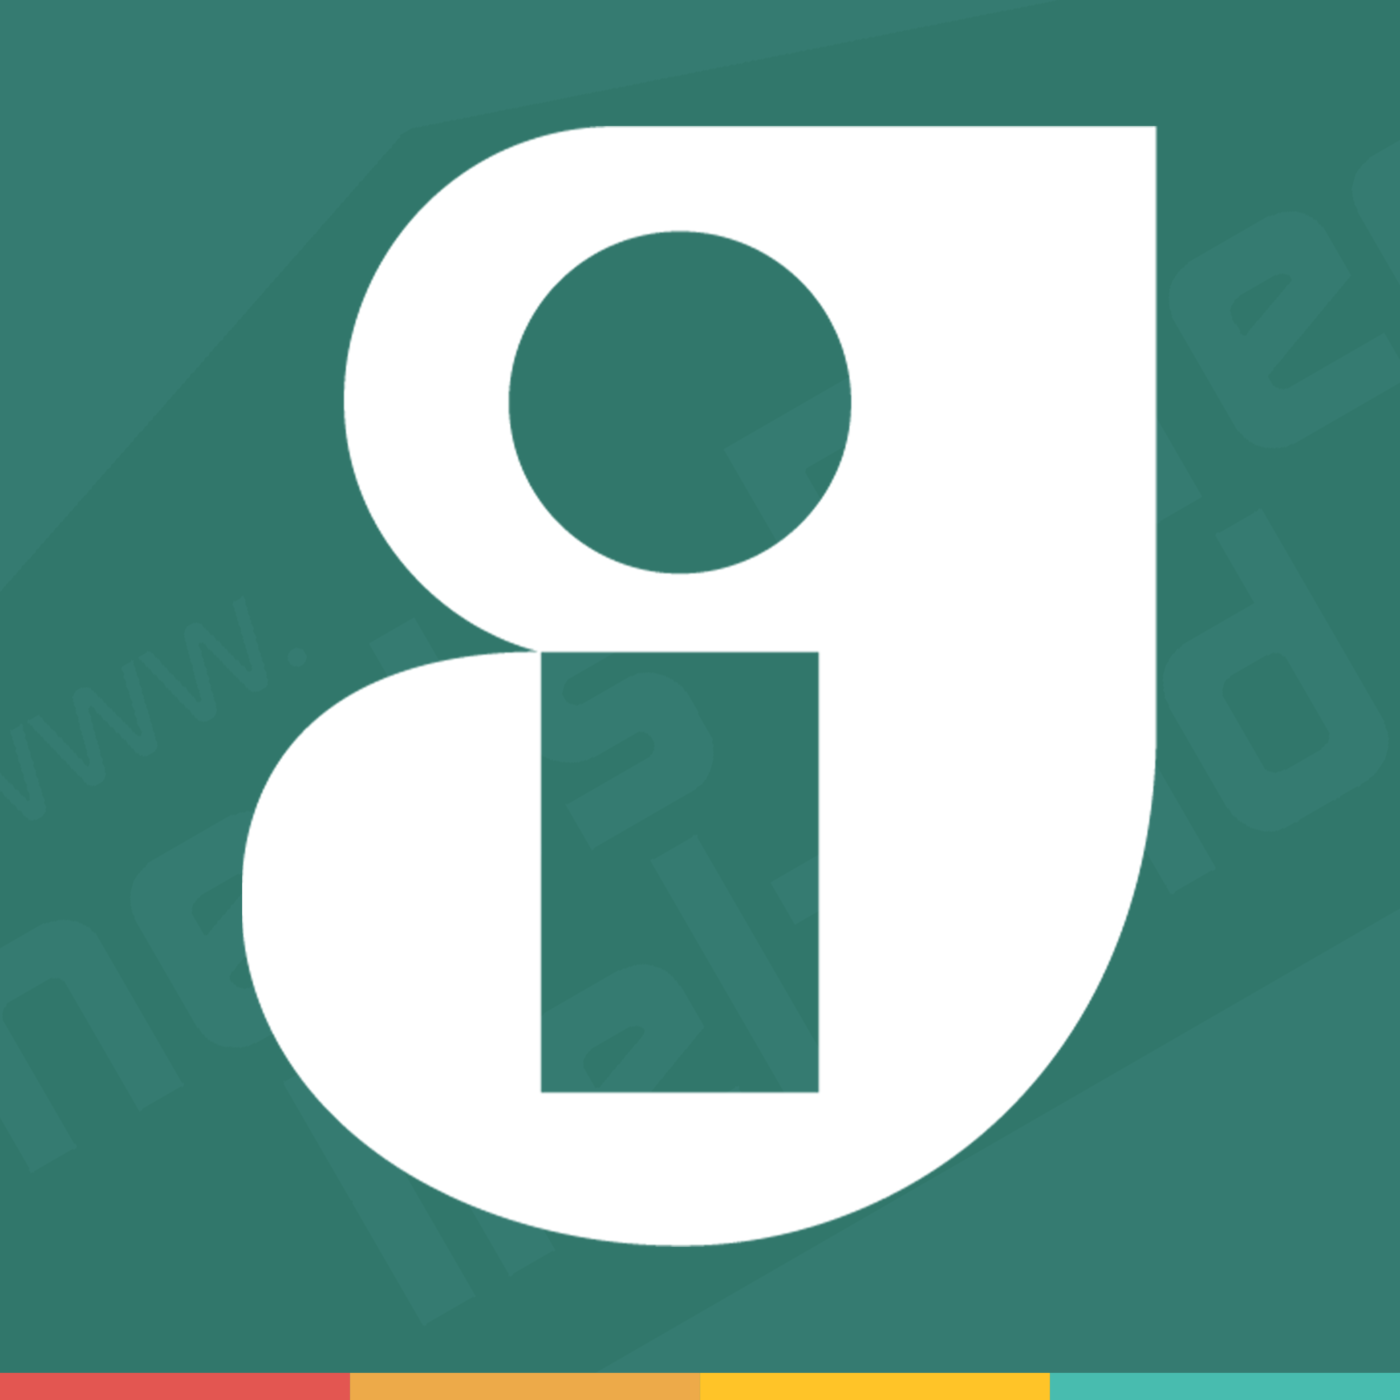 The Guaranteed Irish Logo